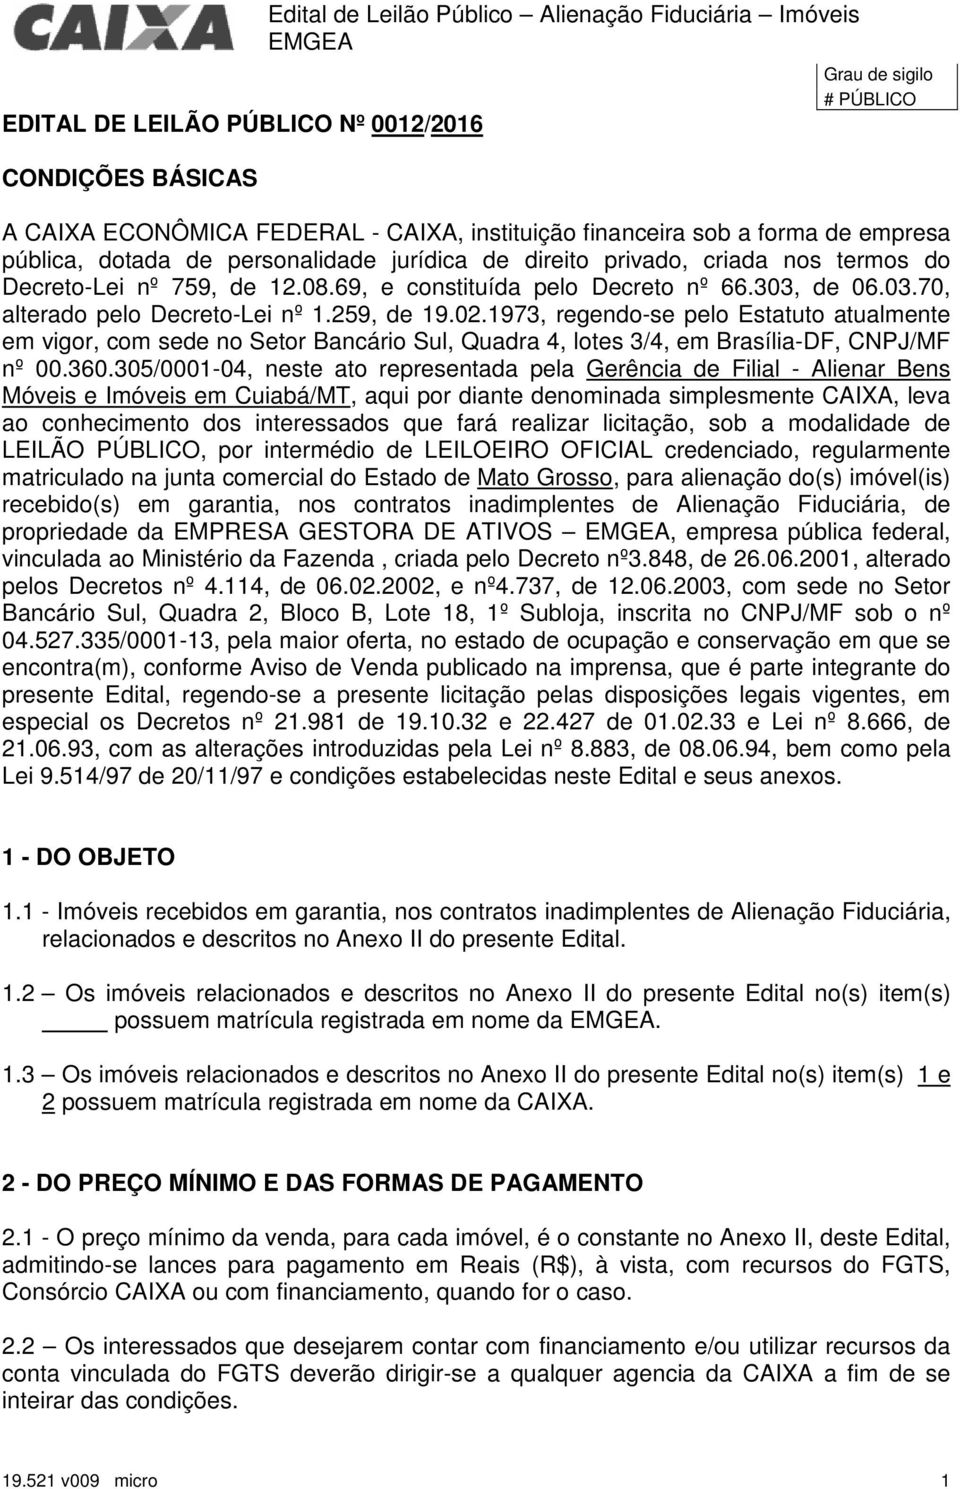 de 06.03.70, alterado pelo Decreto-Lei nº 1.259, de 19.02.1973, regendo-se pelo Estatuto atualmente em vigor, com sede no Setor Bancário Sul, Quadra 4, lotes 3/4, em Brasília-DF, CNPJ/MF nº 00.360.